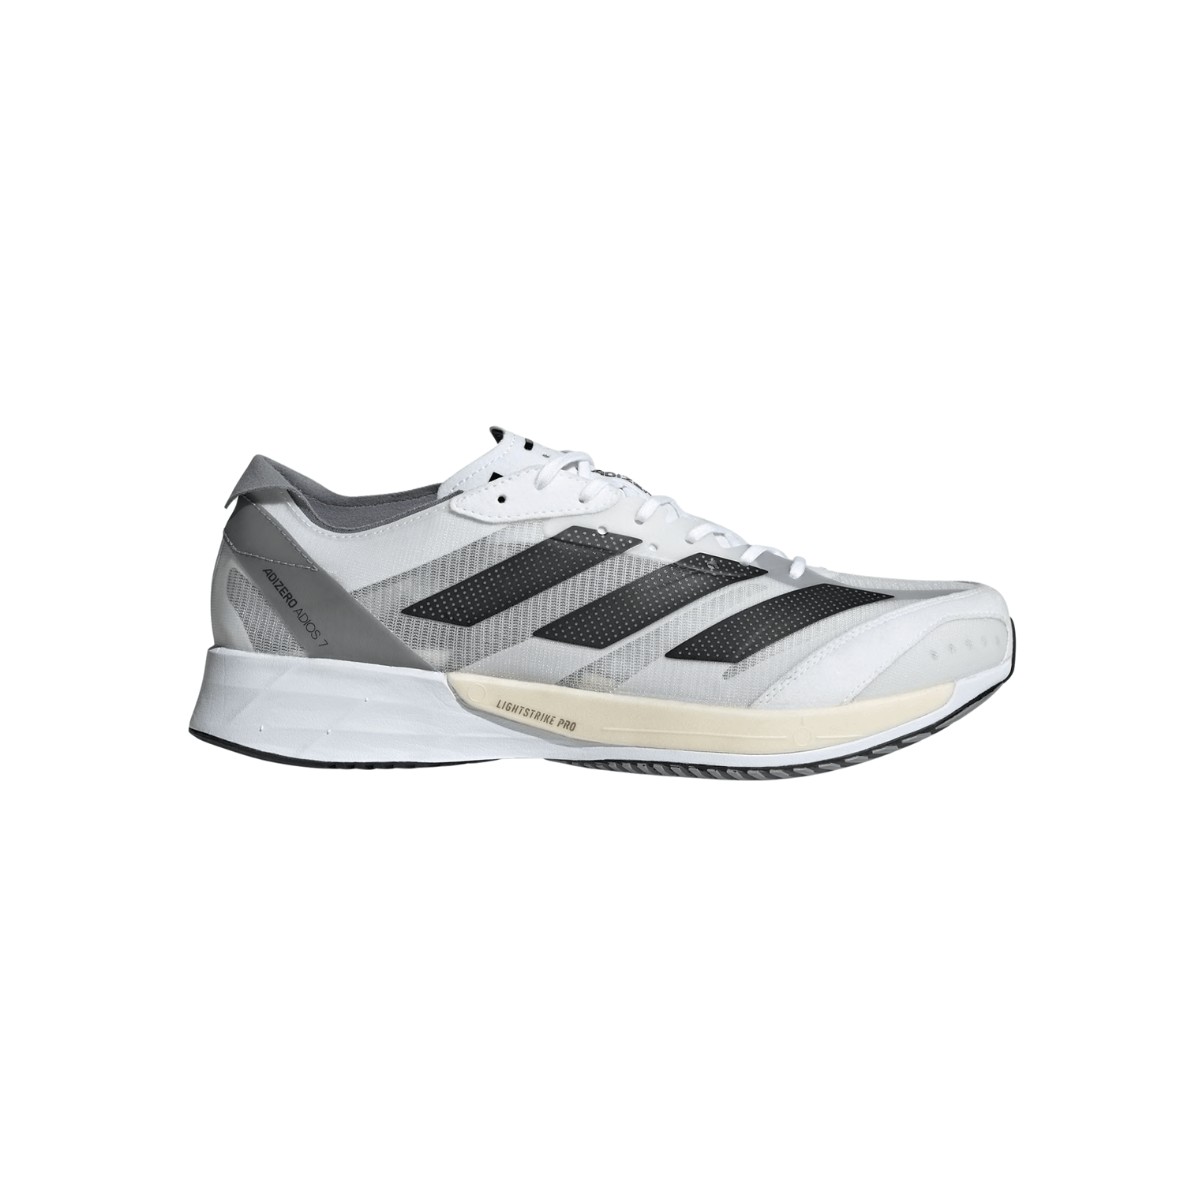 Adidas Adizero Adios 7 Shoes White Grey Black AW22, Size UK 11